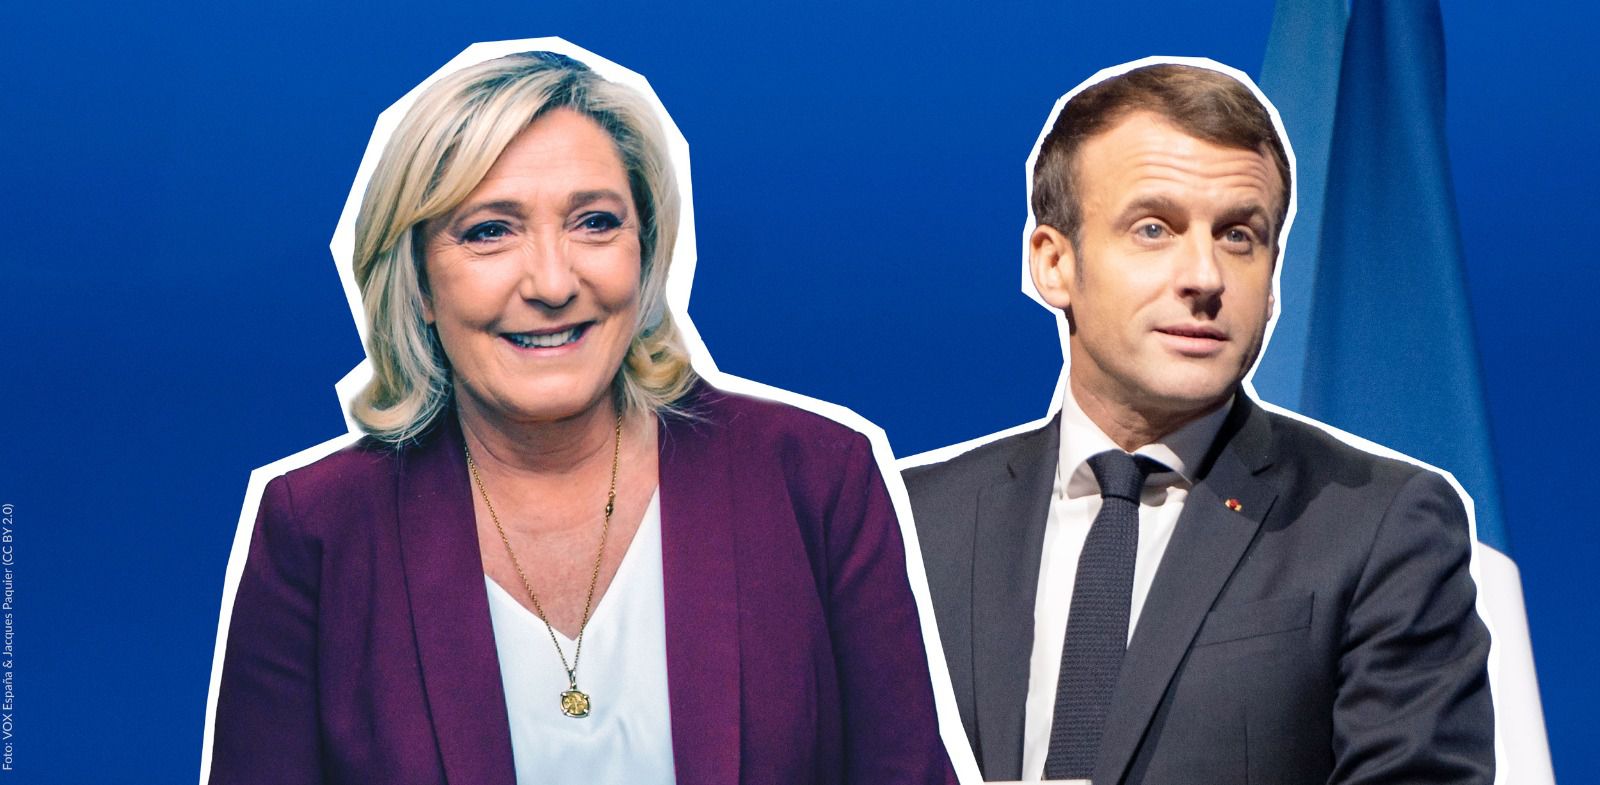 Marcon gegen Le Pen: Warum konnte die Rechte in Frankreich so stark werden?